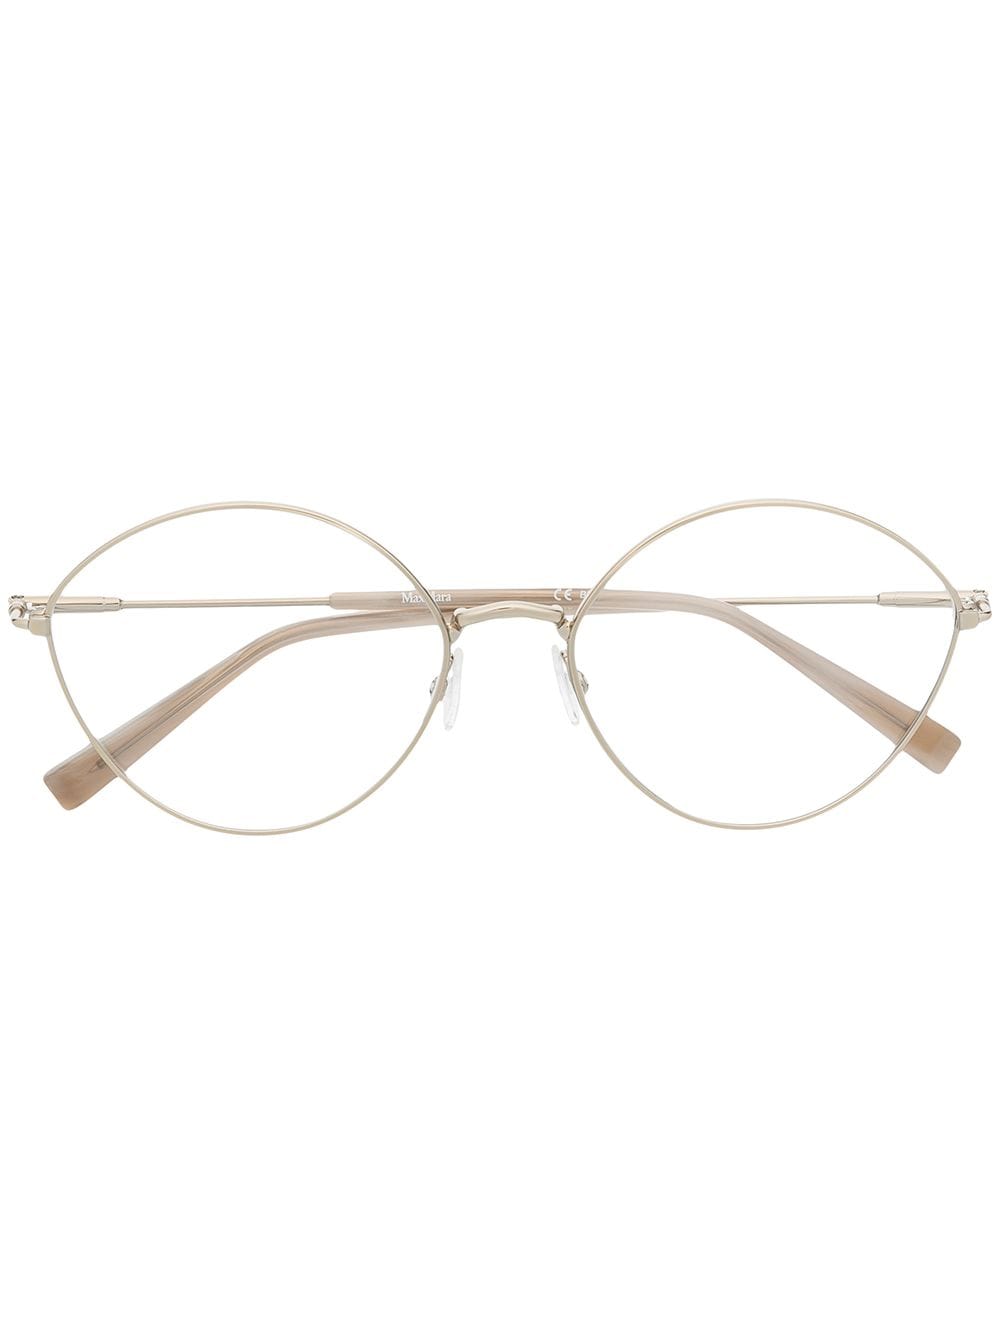 Max Mara Round Frame Glasses - Gold